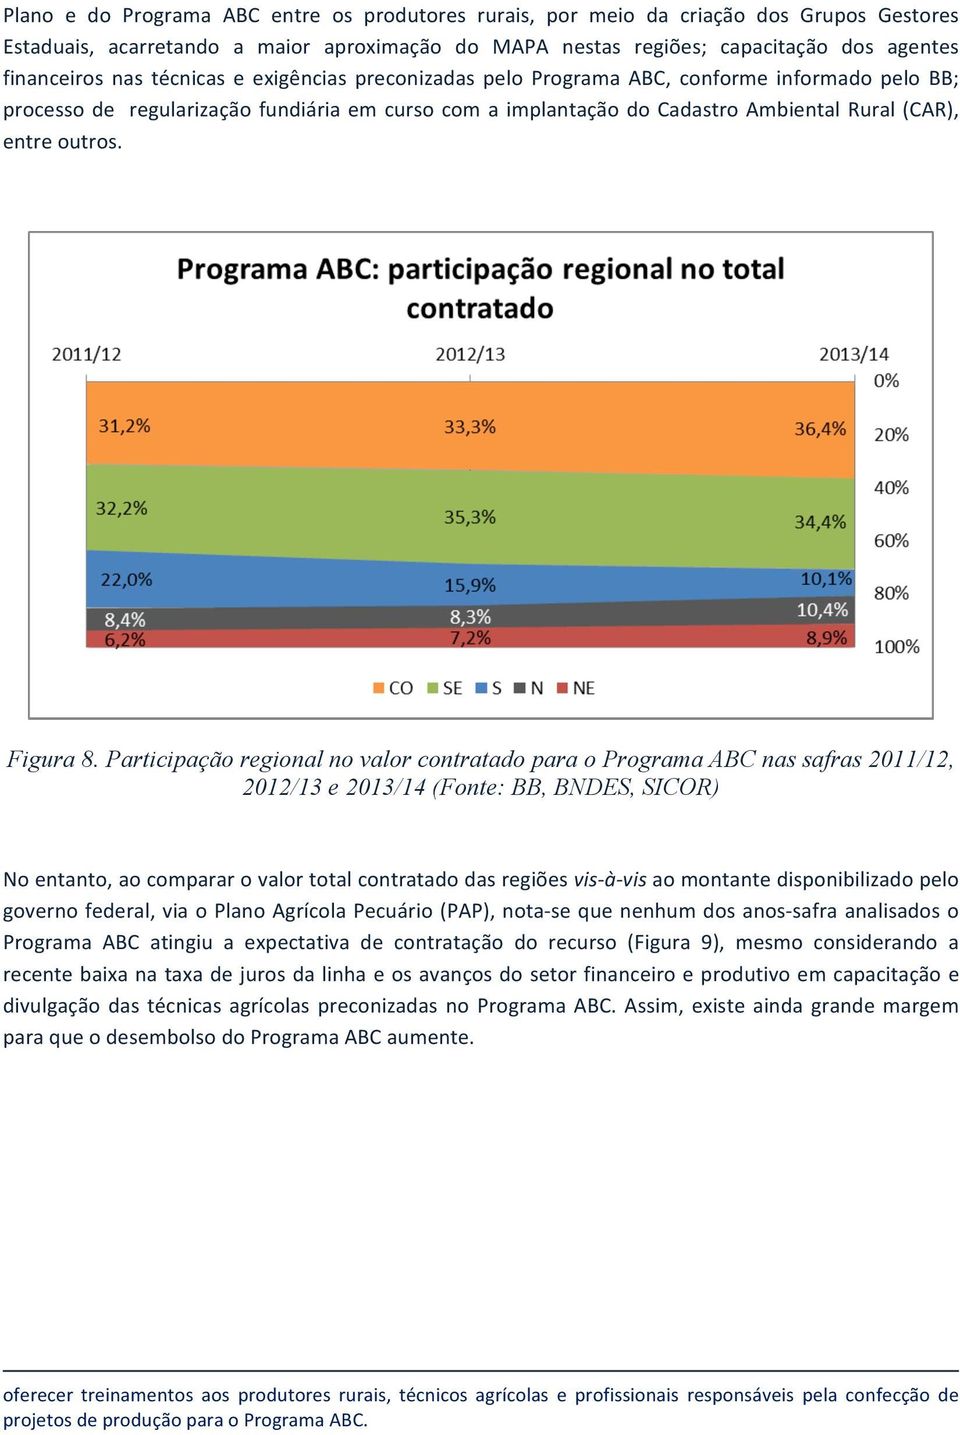 Participação regional no valor contratado para o Programa ABC nas safras 2011/12, 2012/13 e 2013/14 (Fonte: BB, BNDES, SICOR)